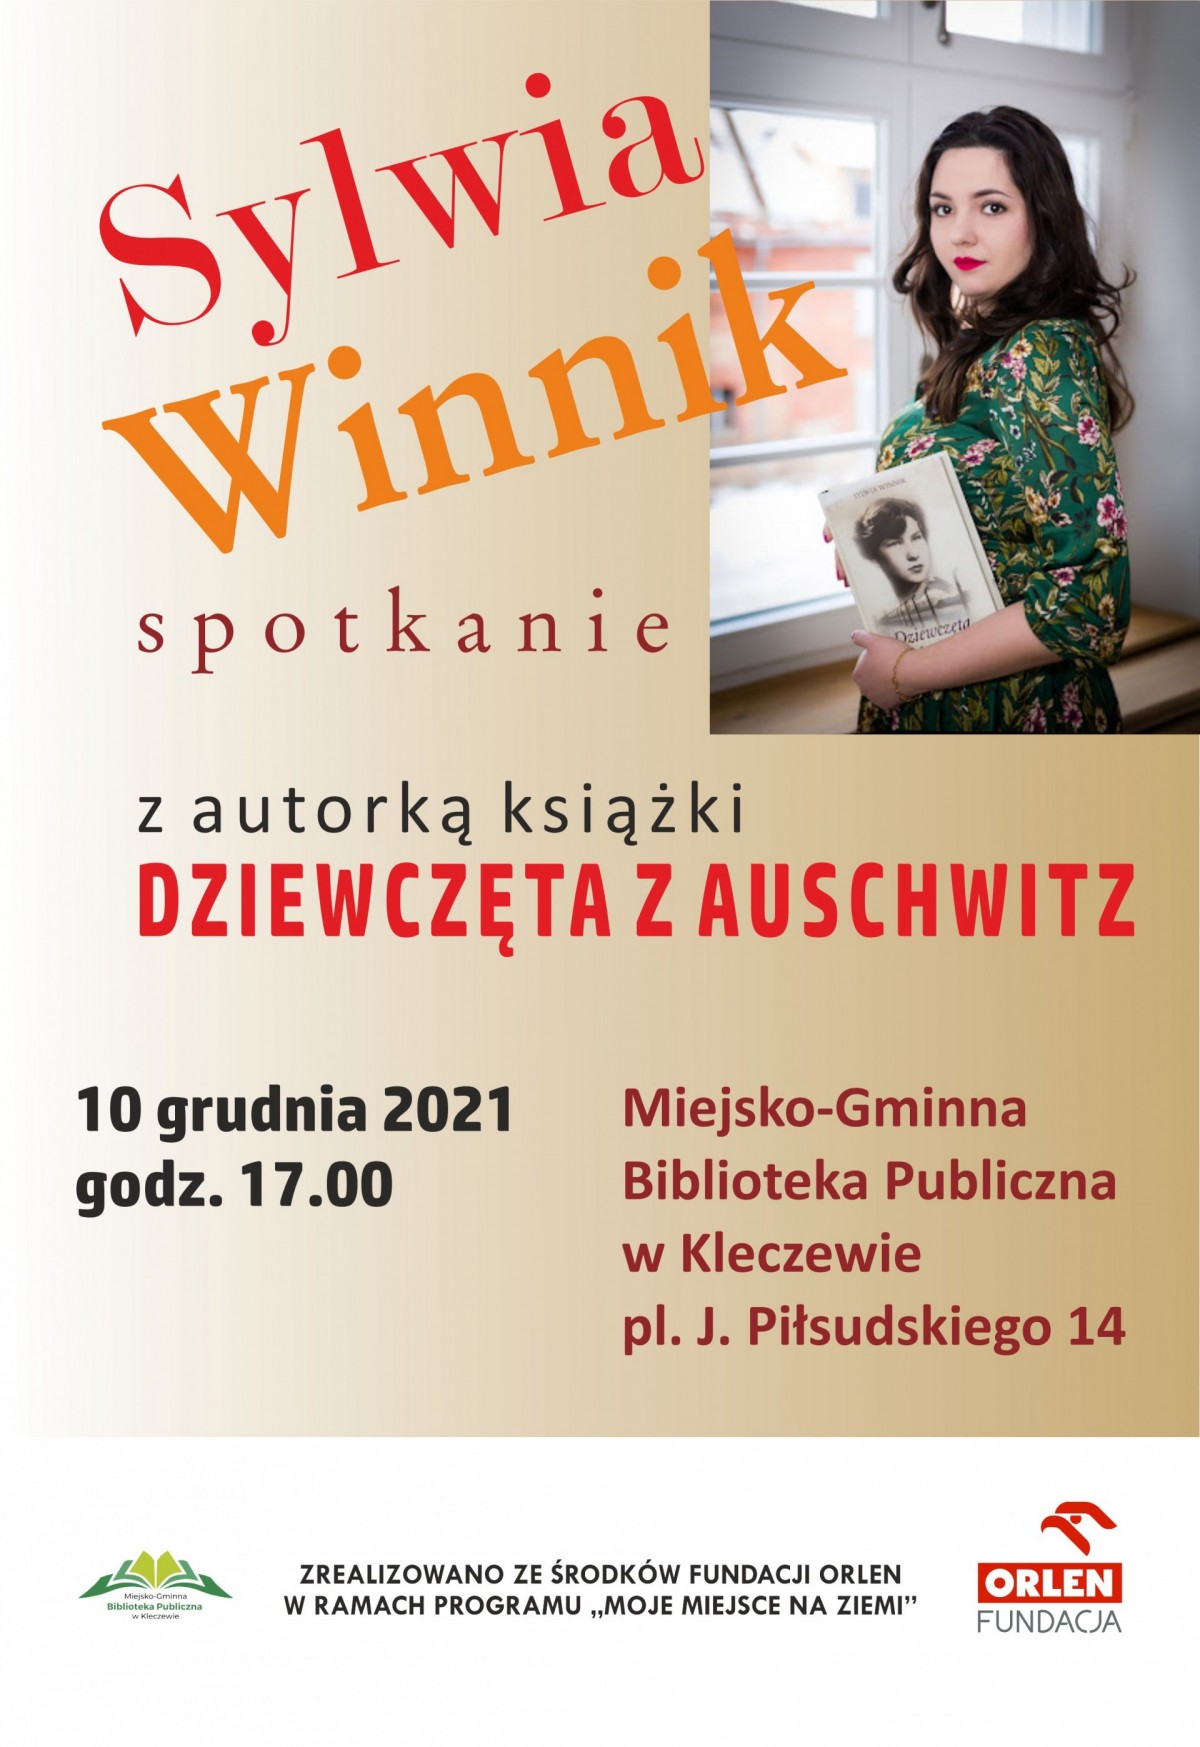 Spotkanie autorskie z Sylwią Winnik